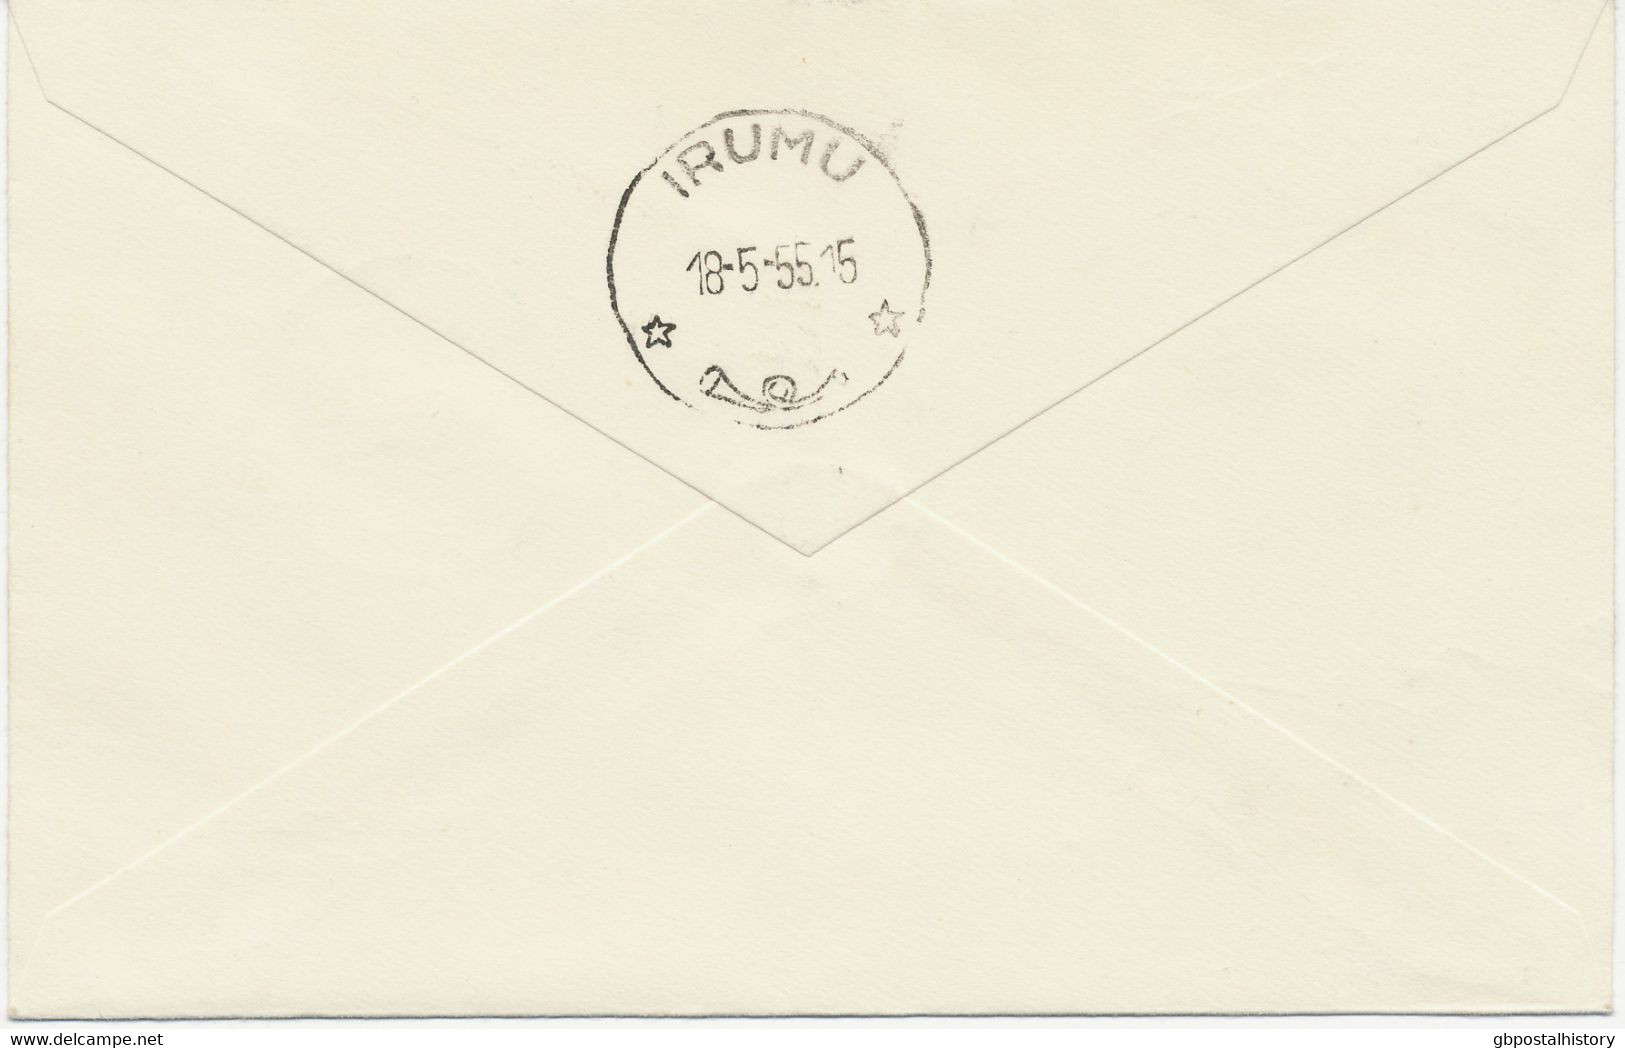 BELGISCH-KONGO 18.5.1955, Blumen Misch-Frank. A. Sehr Selt. Kab.-Inlands-Erstflug   Der SABENA "PAULIS (ISIRO) – IRUMU", - Covers & Documents